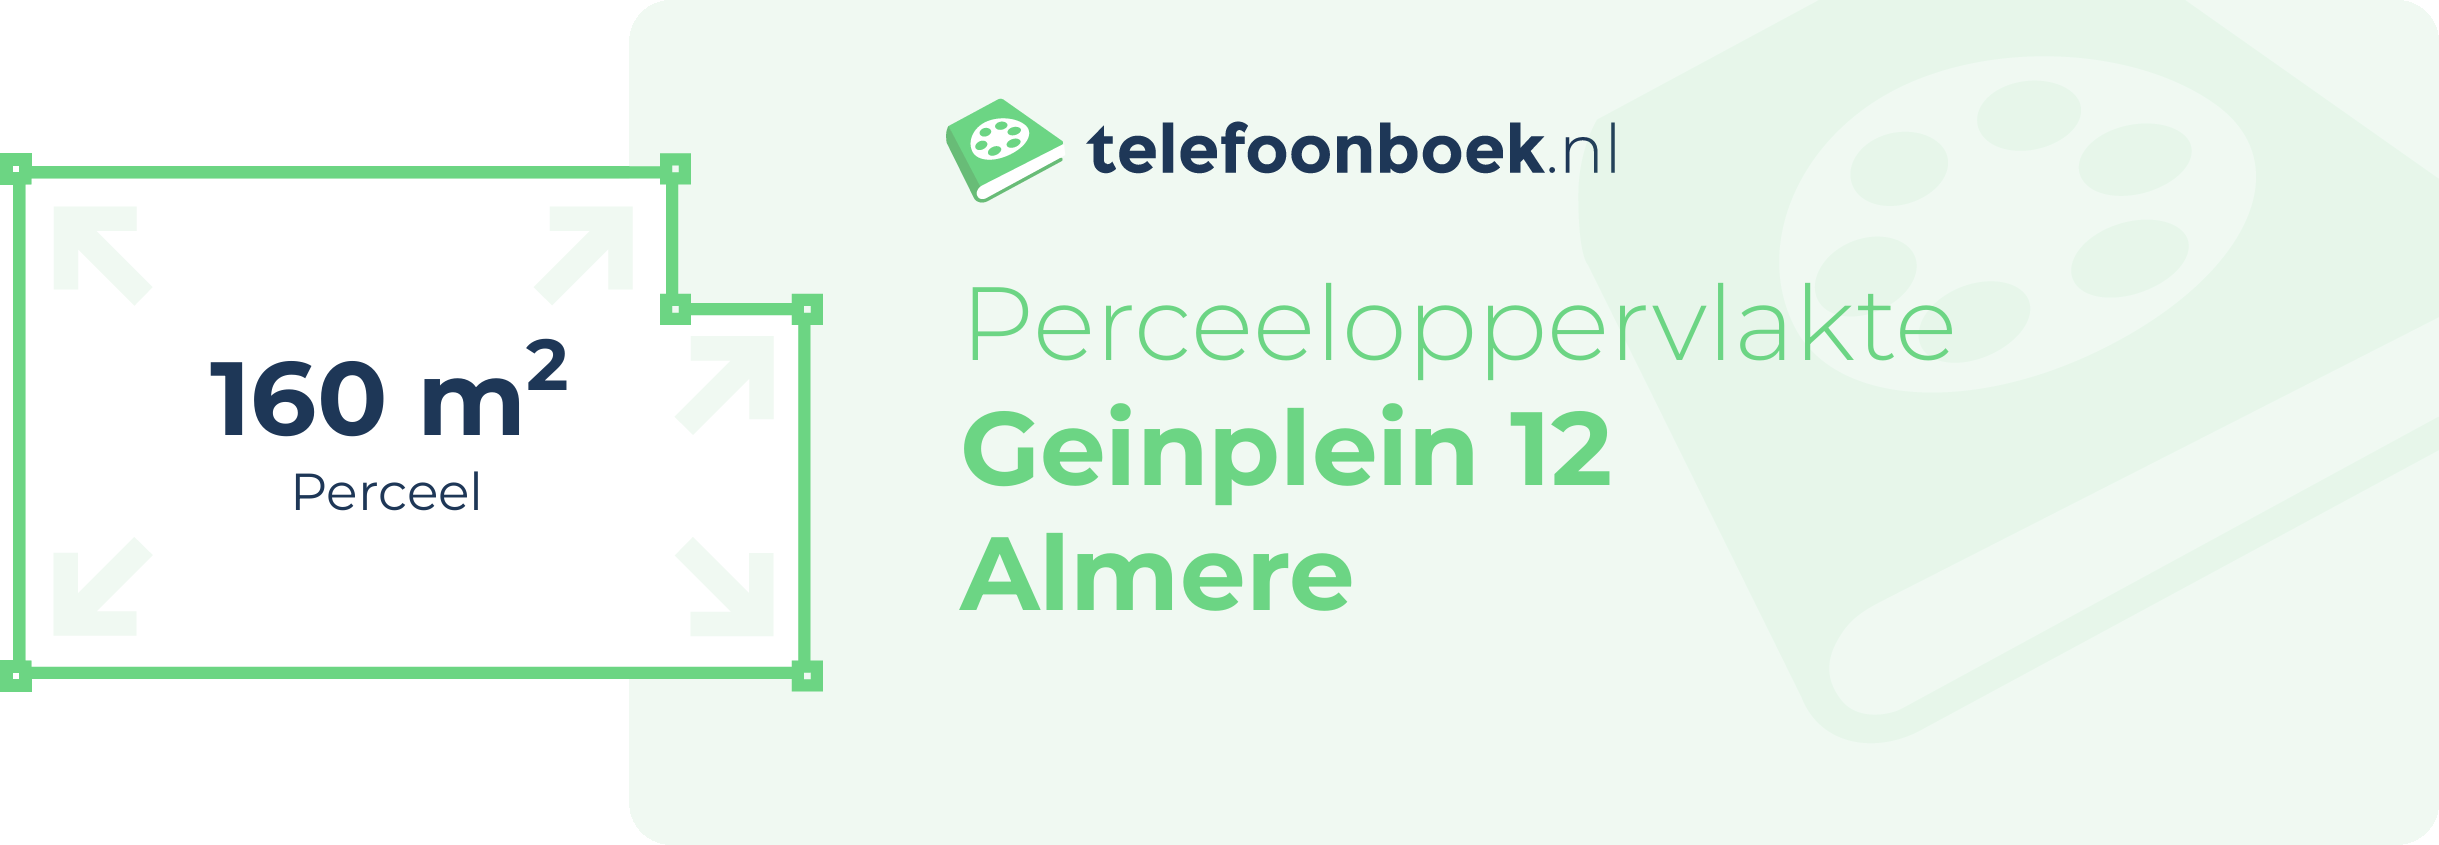 Perceeloppervlakte Geinplein 12 Almere